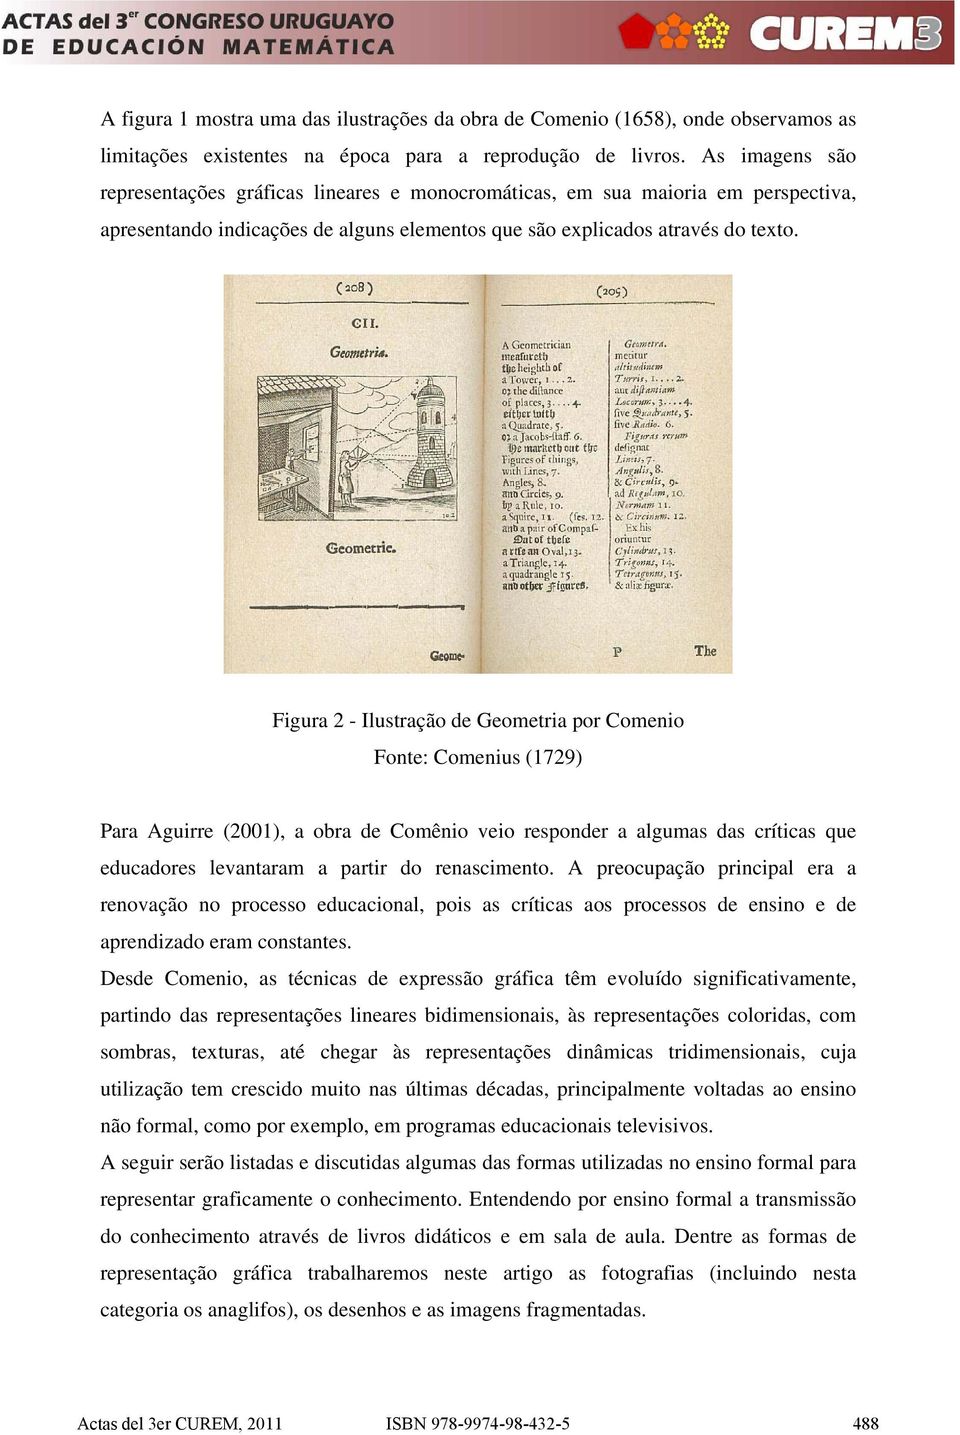 Figura 2 - Ilustração de Geometria por Comenio Fonte: Comenius (1729) Para Aguirre (2001), a obra de Comênio veio responder a algumas das críticas que educadores levantaram a partir do renascimento.